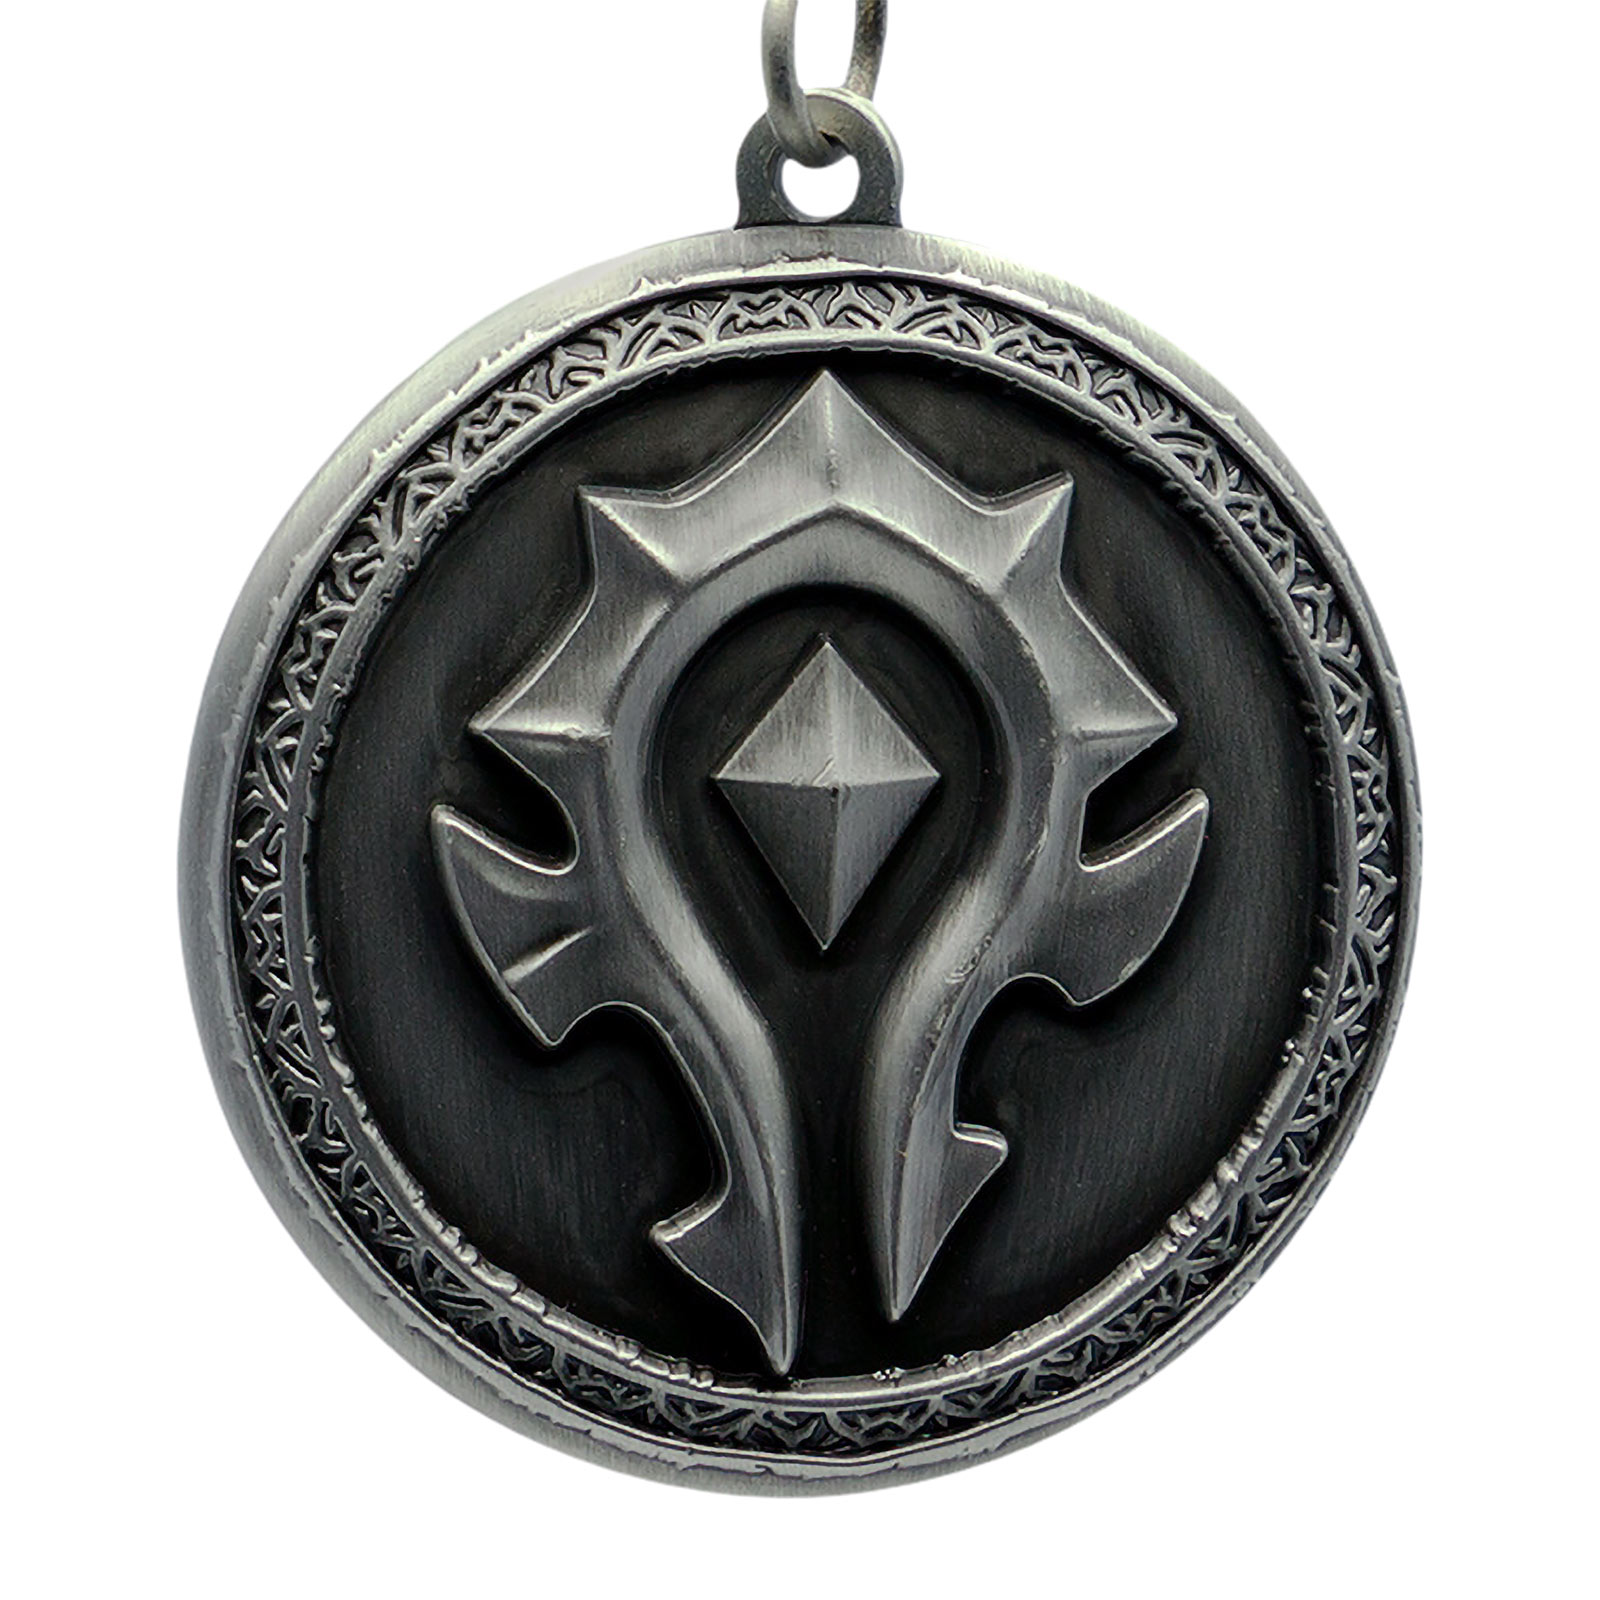 World of Warcraft - Horde Crest Keychain